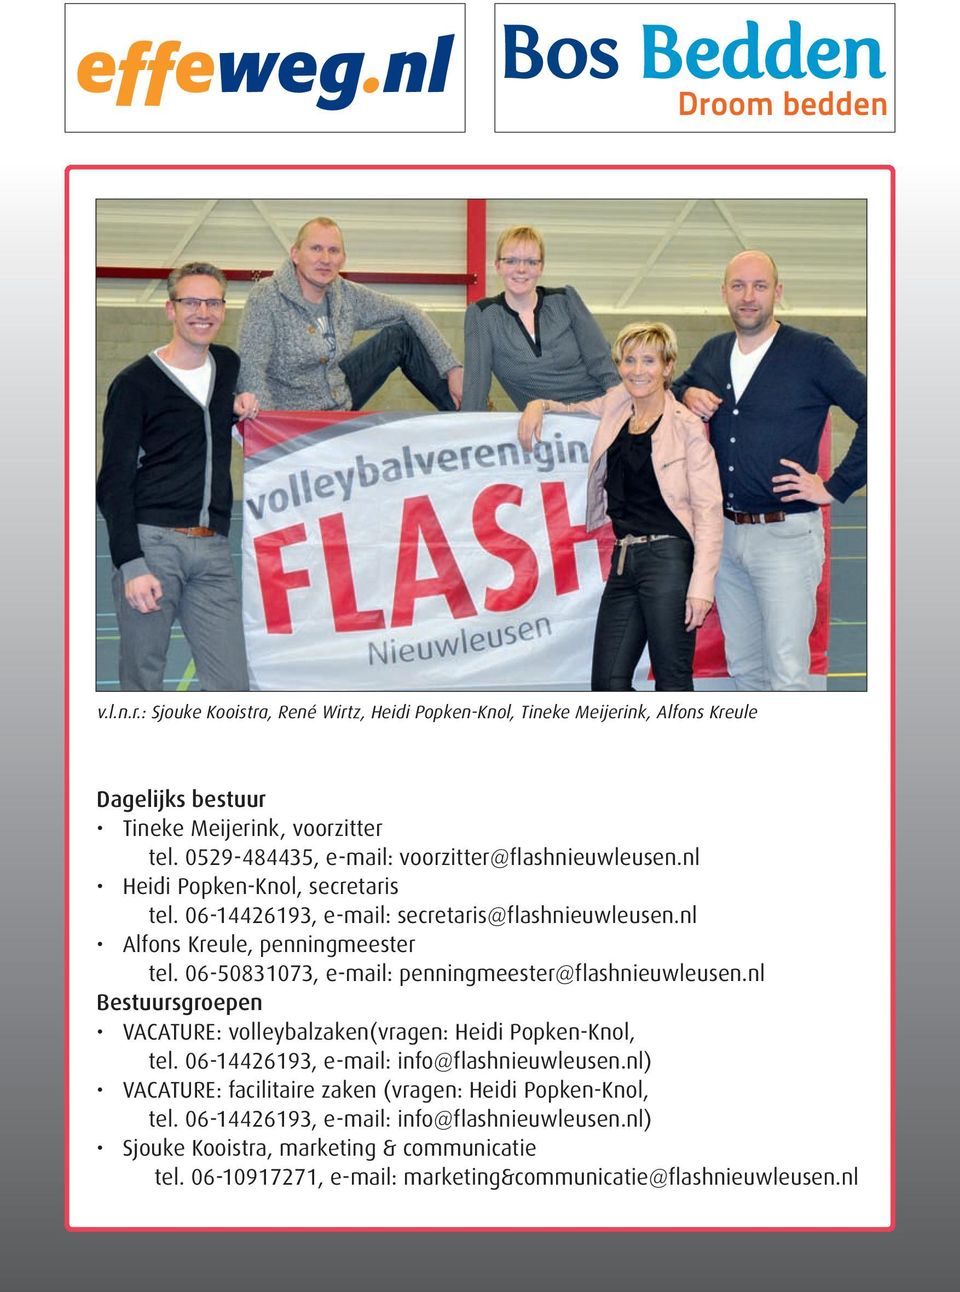 06-50831073, e-mail: penningmeester@flashnieuwleusen.nl Bestuursgroepen VACATURE: volleybalzaken(vragen: Heidi Popken-Knol, tel. 06-14426193, e-mail: info@flashnieuwleusen.